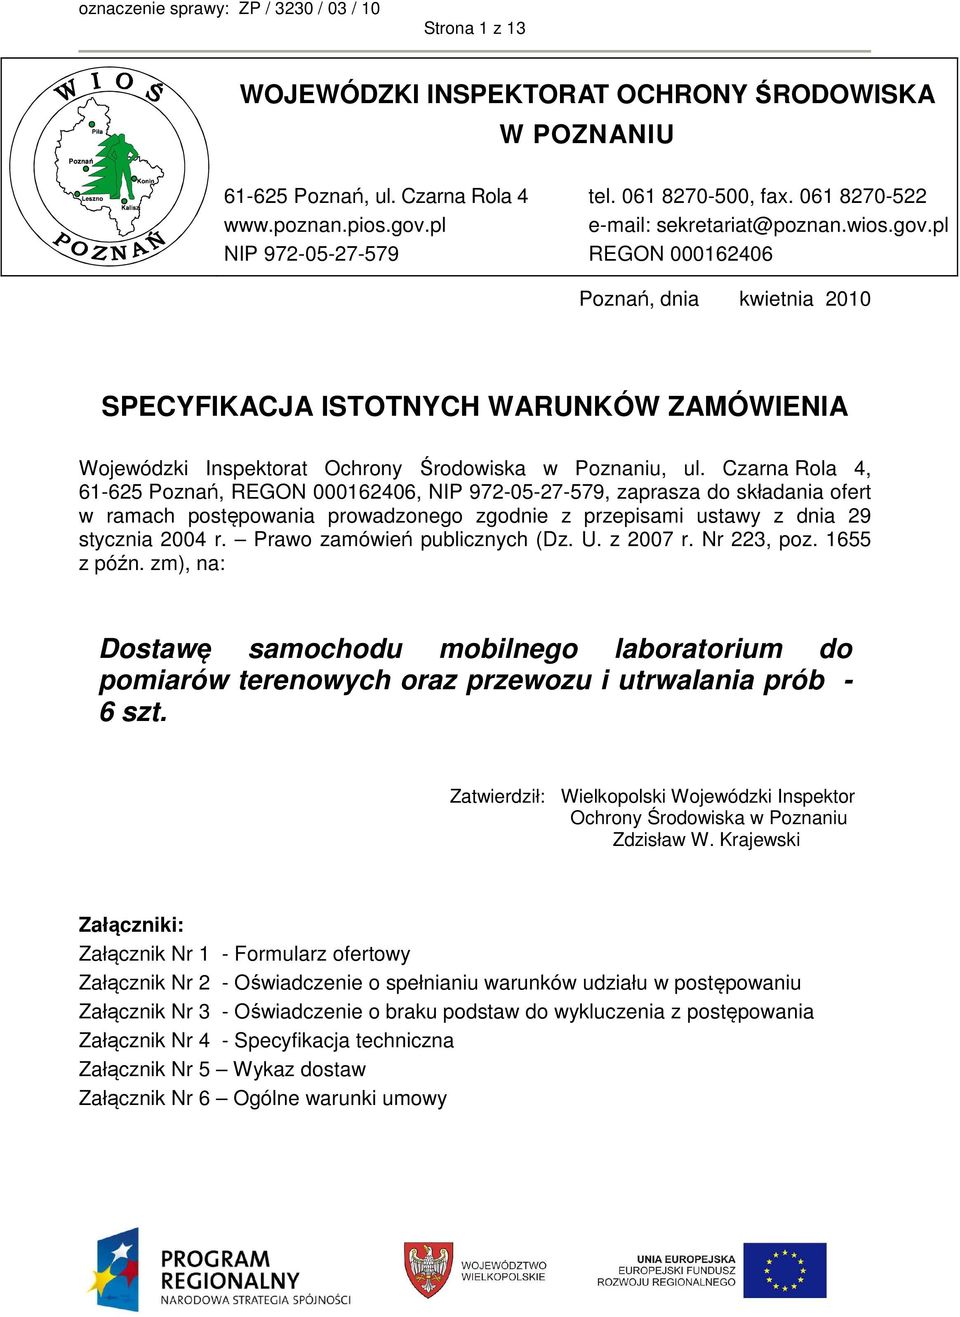 Czarna Rola 4, 61-65 Poznań, REGON 00016406, NIP 97-05-7-579, zaprasza do składania ofert w ramach postępowania prowadzonego zgodnie z przepisami ustawy z dnia 9 stycznia 004 r.